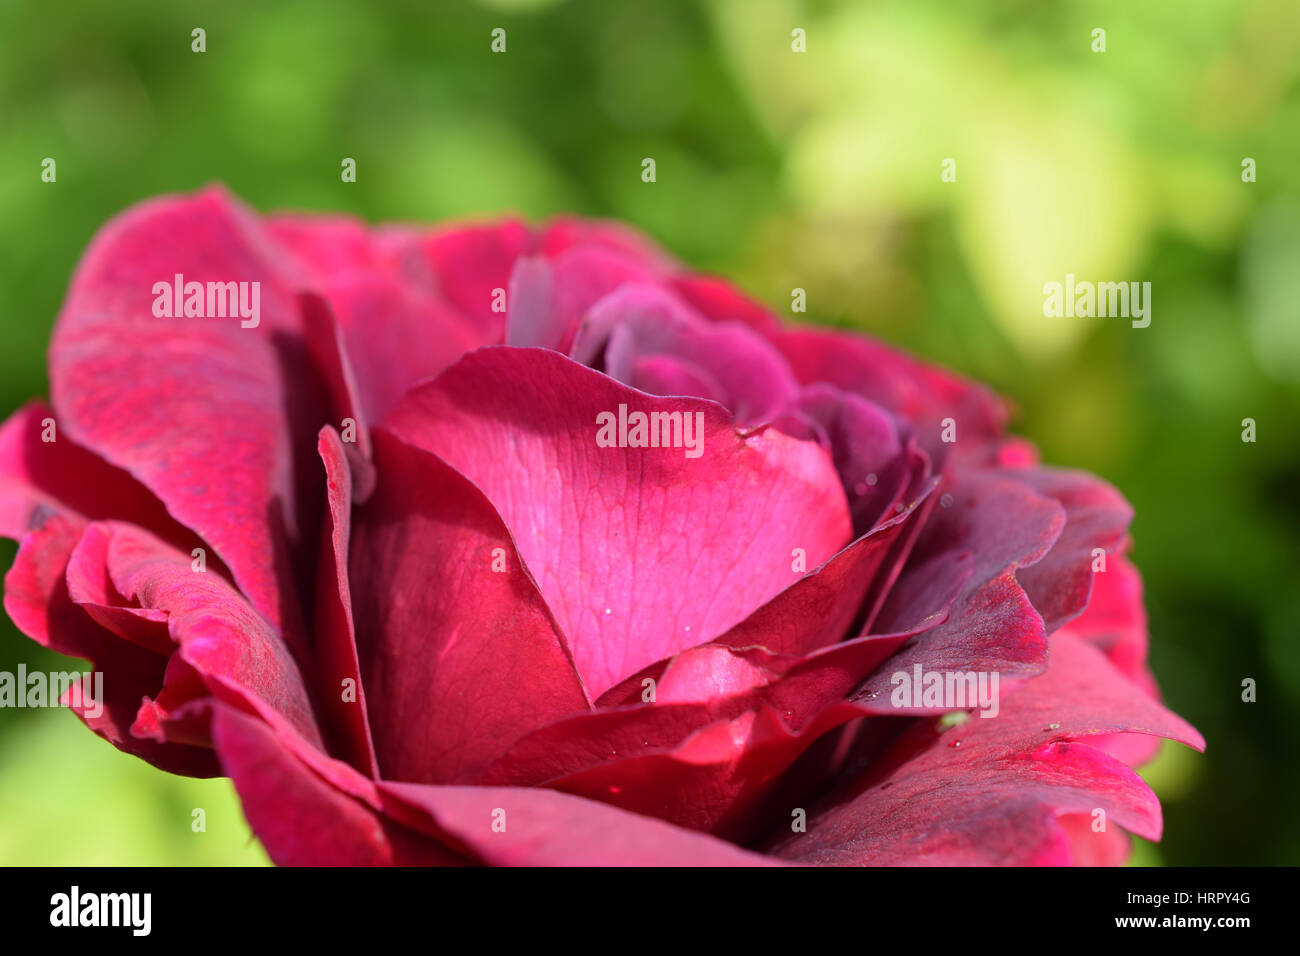 Crimson Rose - William Shakespeare, David Austin Roses Stock Photo